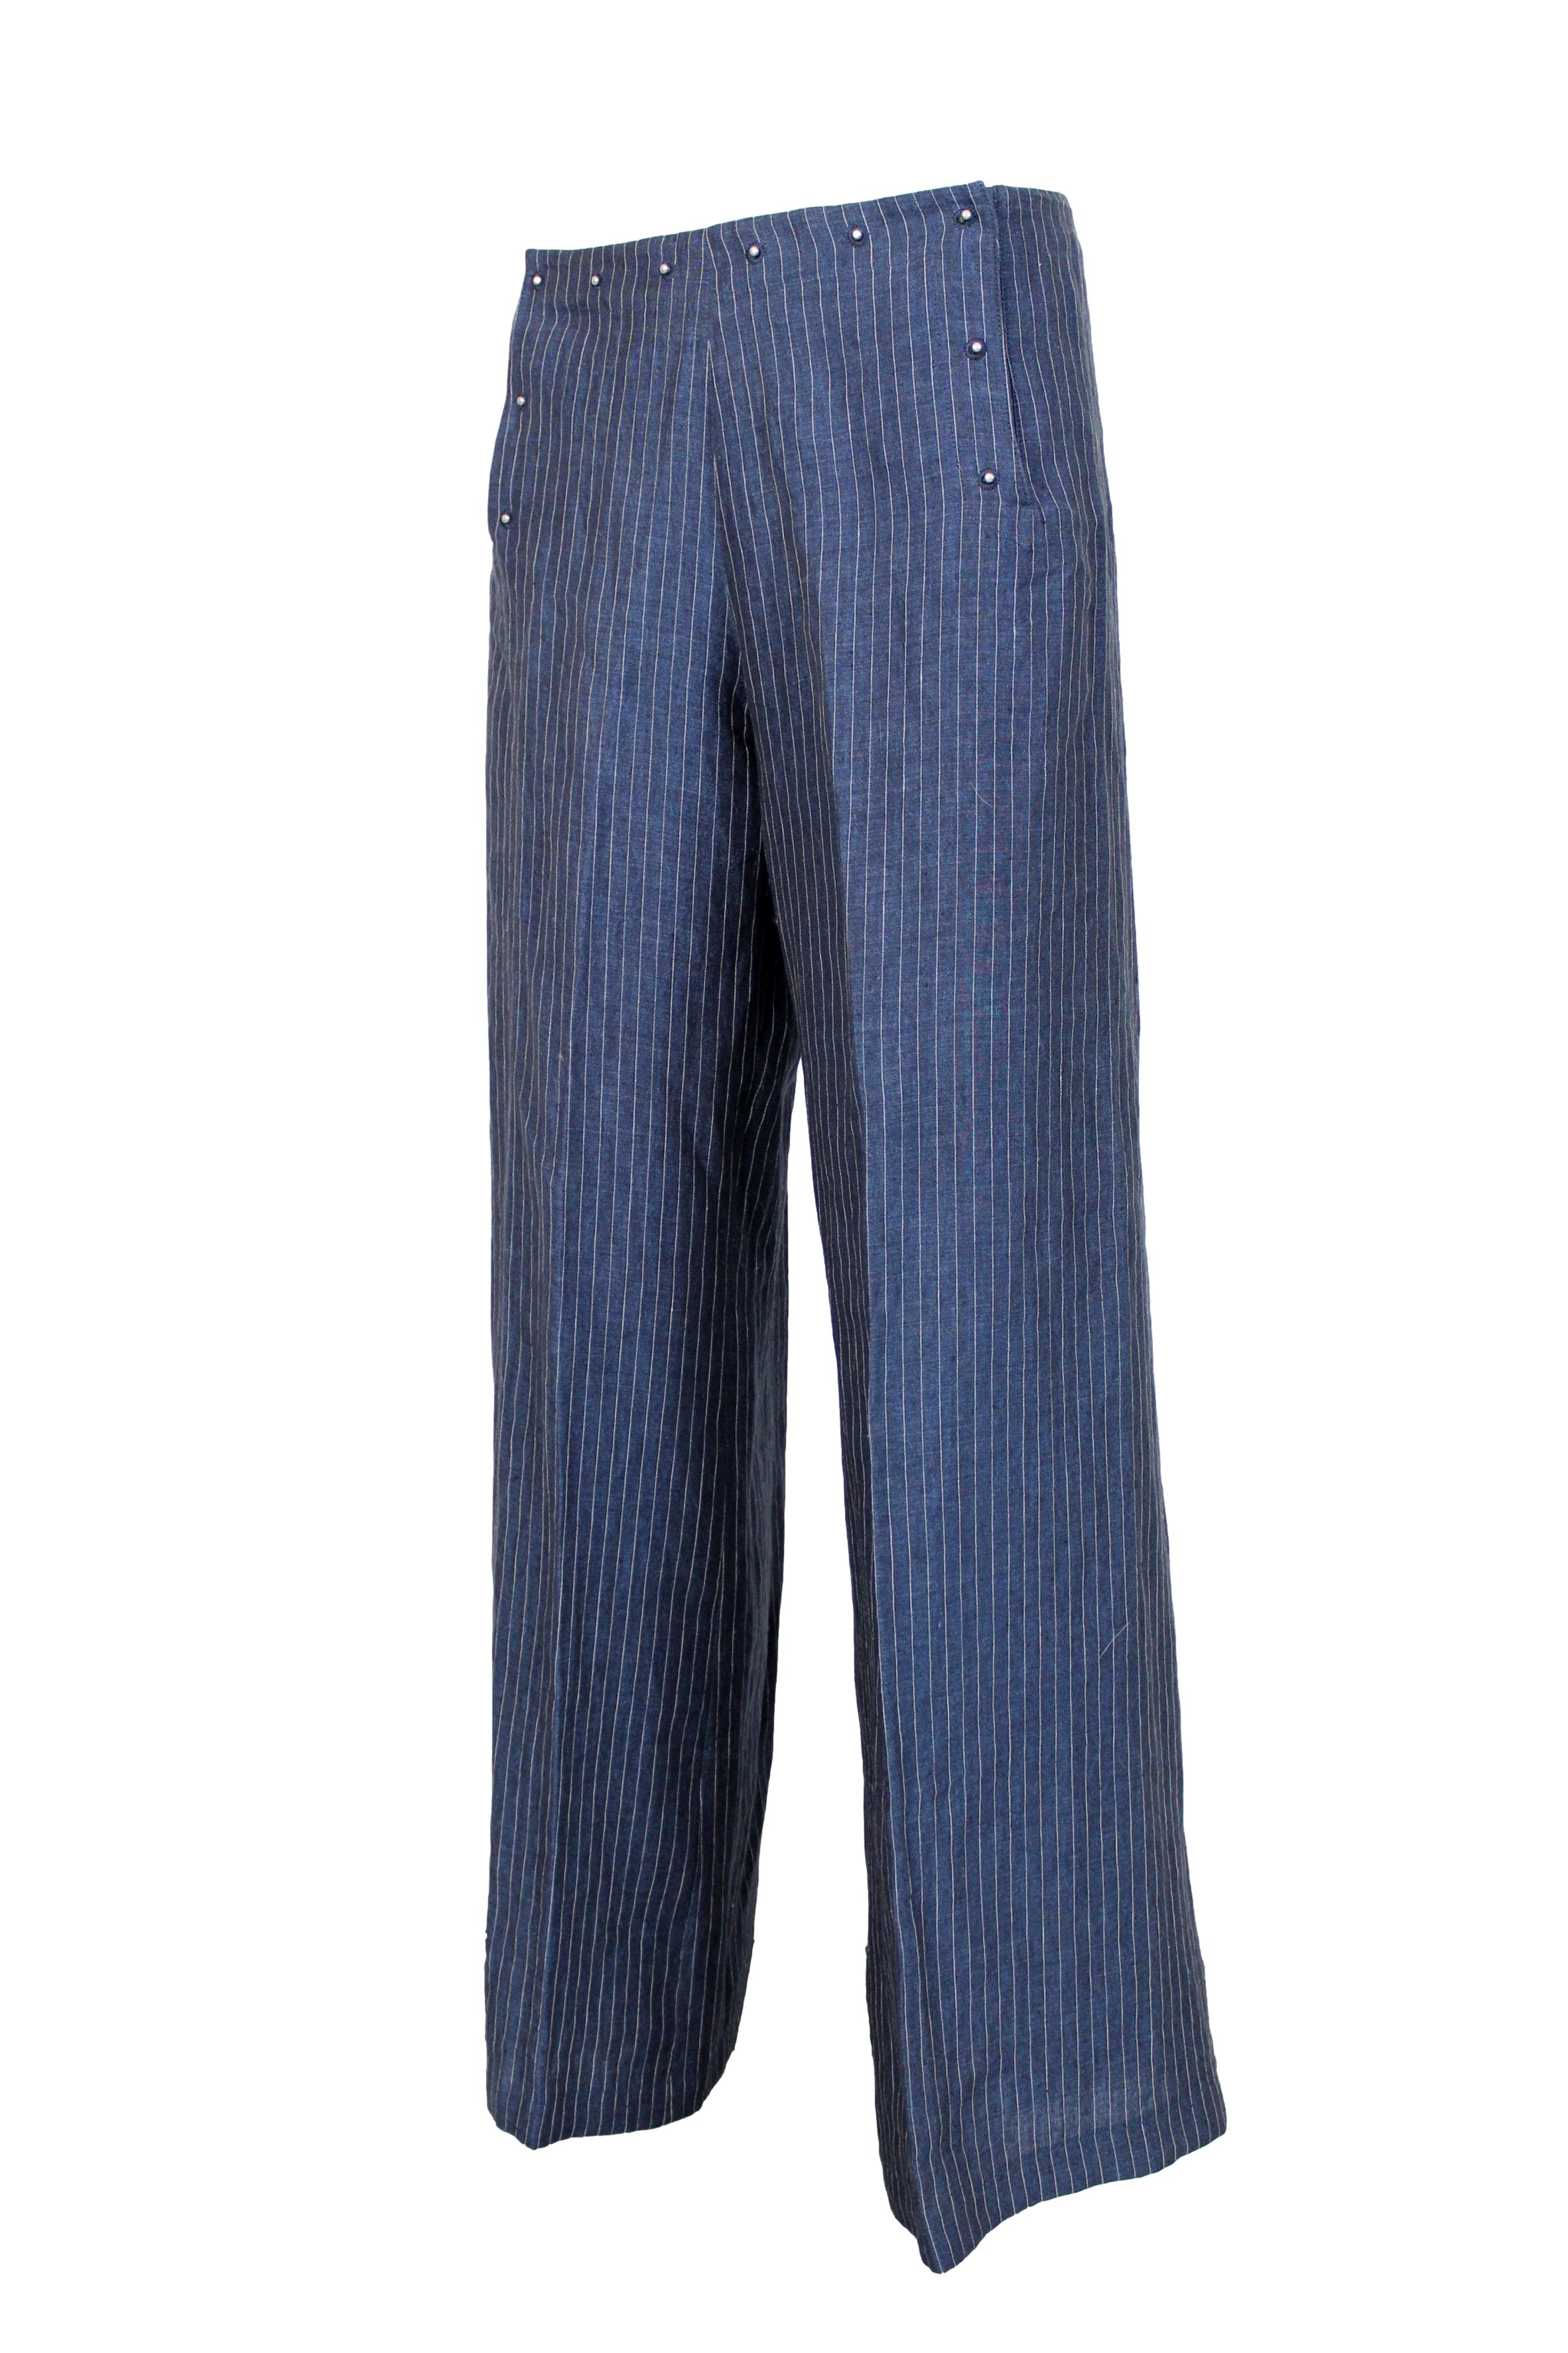 Women's Jean Paul Gaultier Blue Gray Linen Striped Trousers